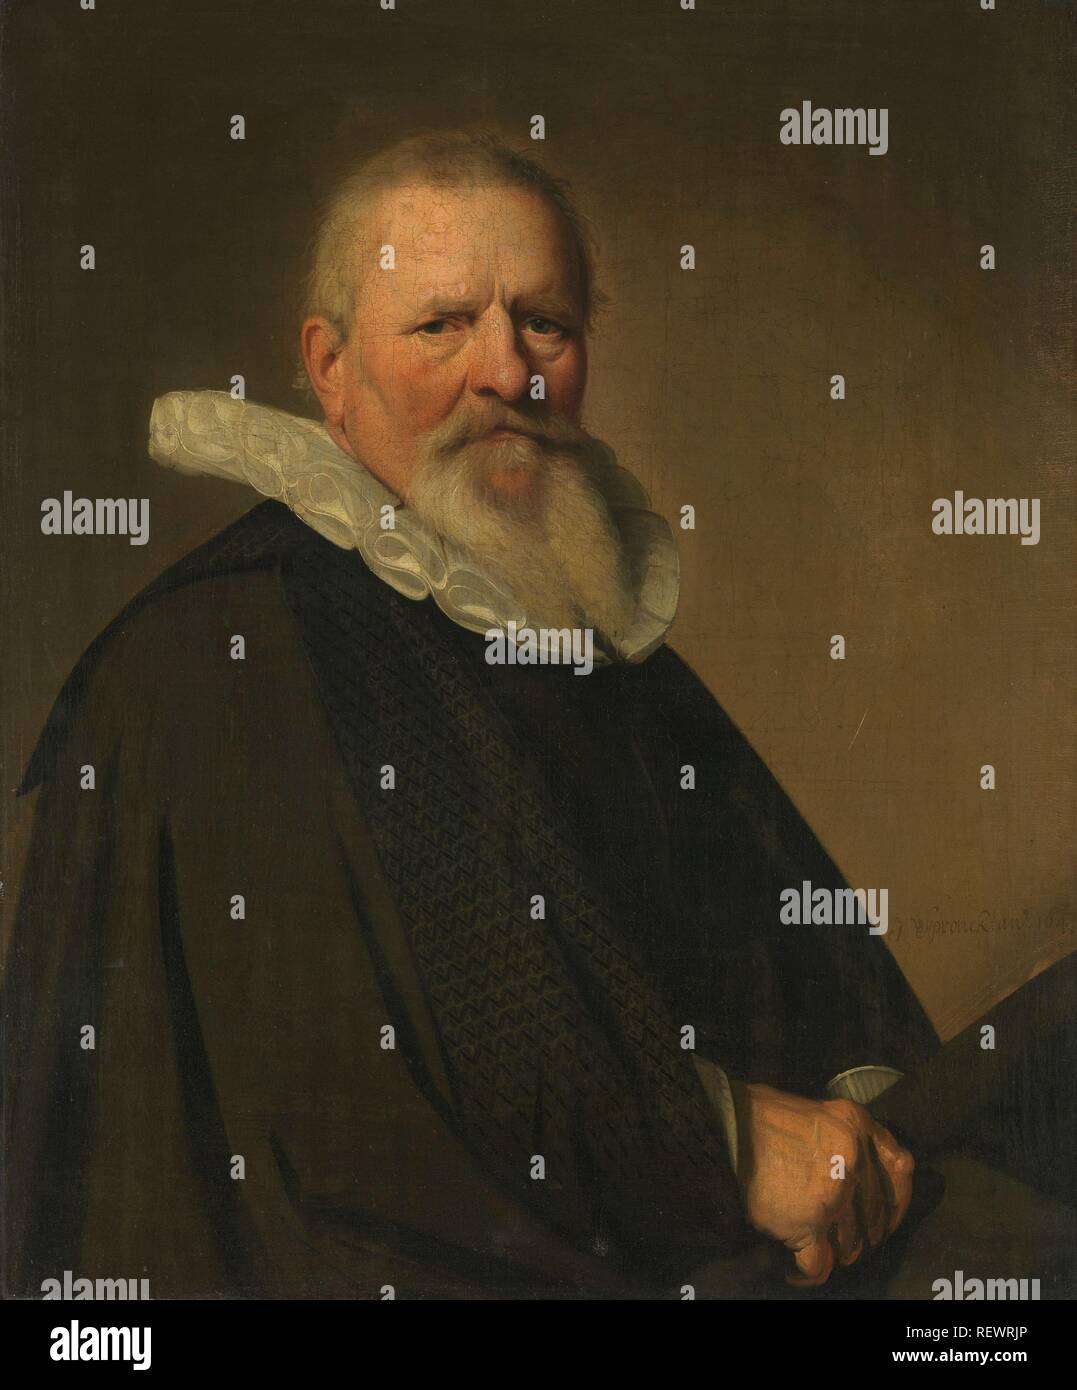 Pieter Jacobsz Schout (1570-1645), bourgmestre de Haarlem. Dating : 1641. Dimensions : H 78 cm × w 65 cm ; d 8,5 cm. Musée : Rijksmuseum, Amsterdam. Auteur : Johannes Cornelisz. Verspronck. Banque D'Images